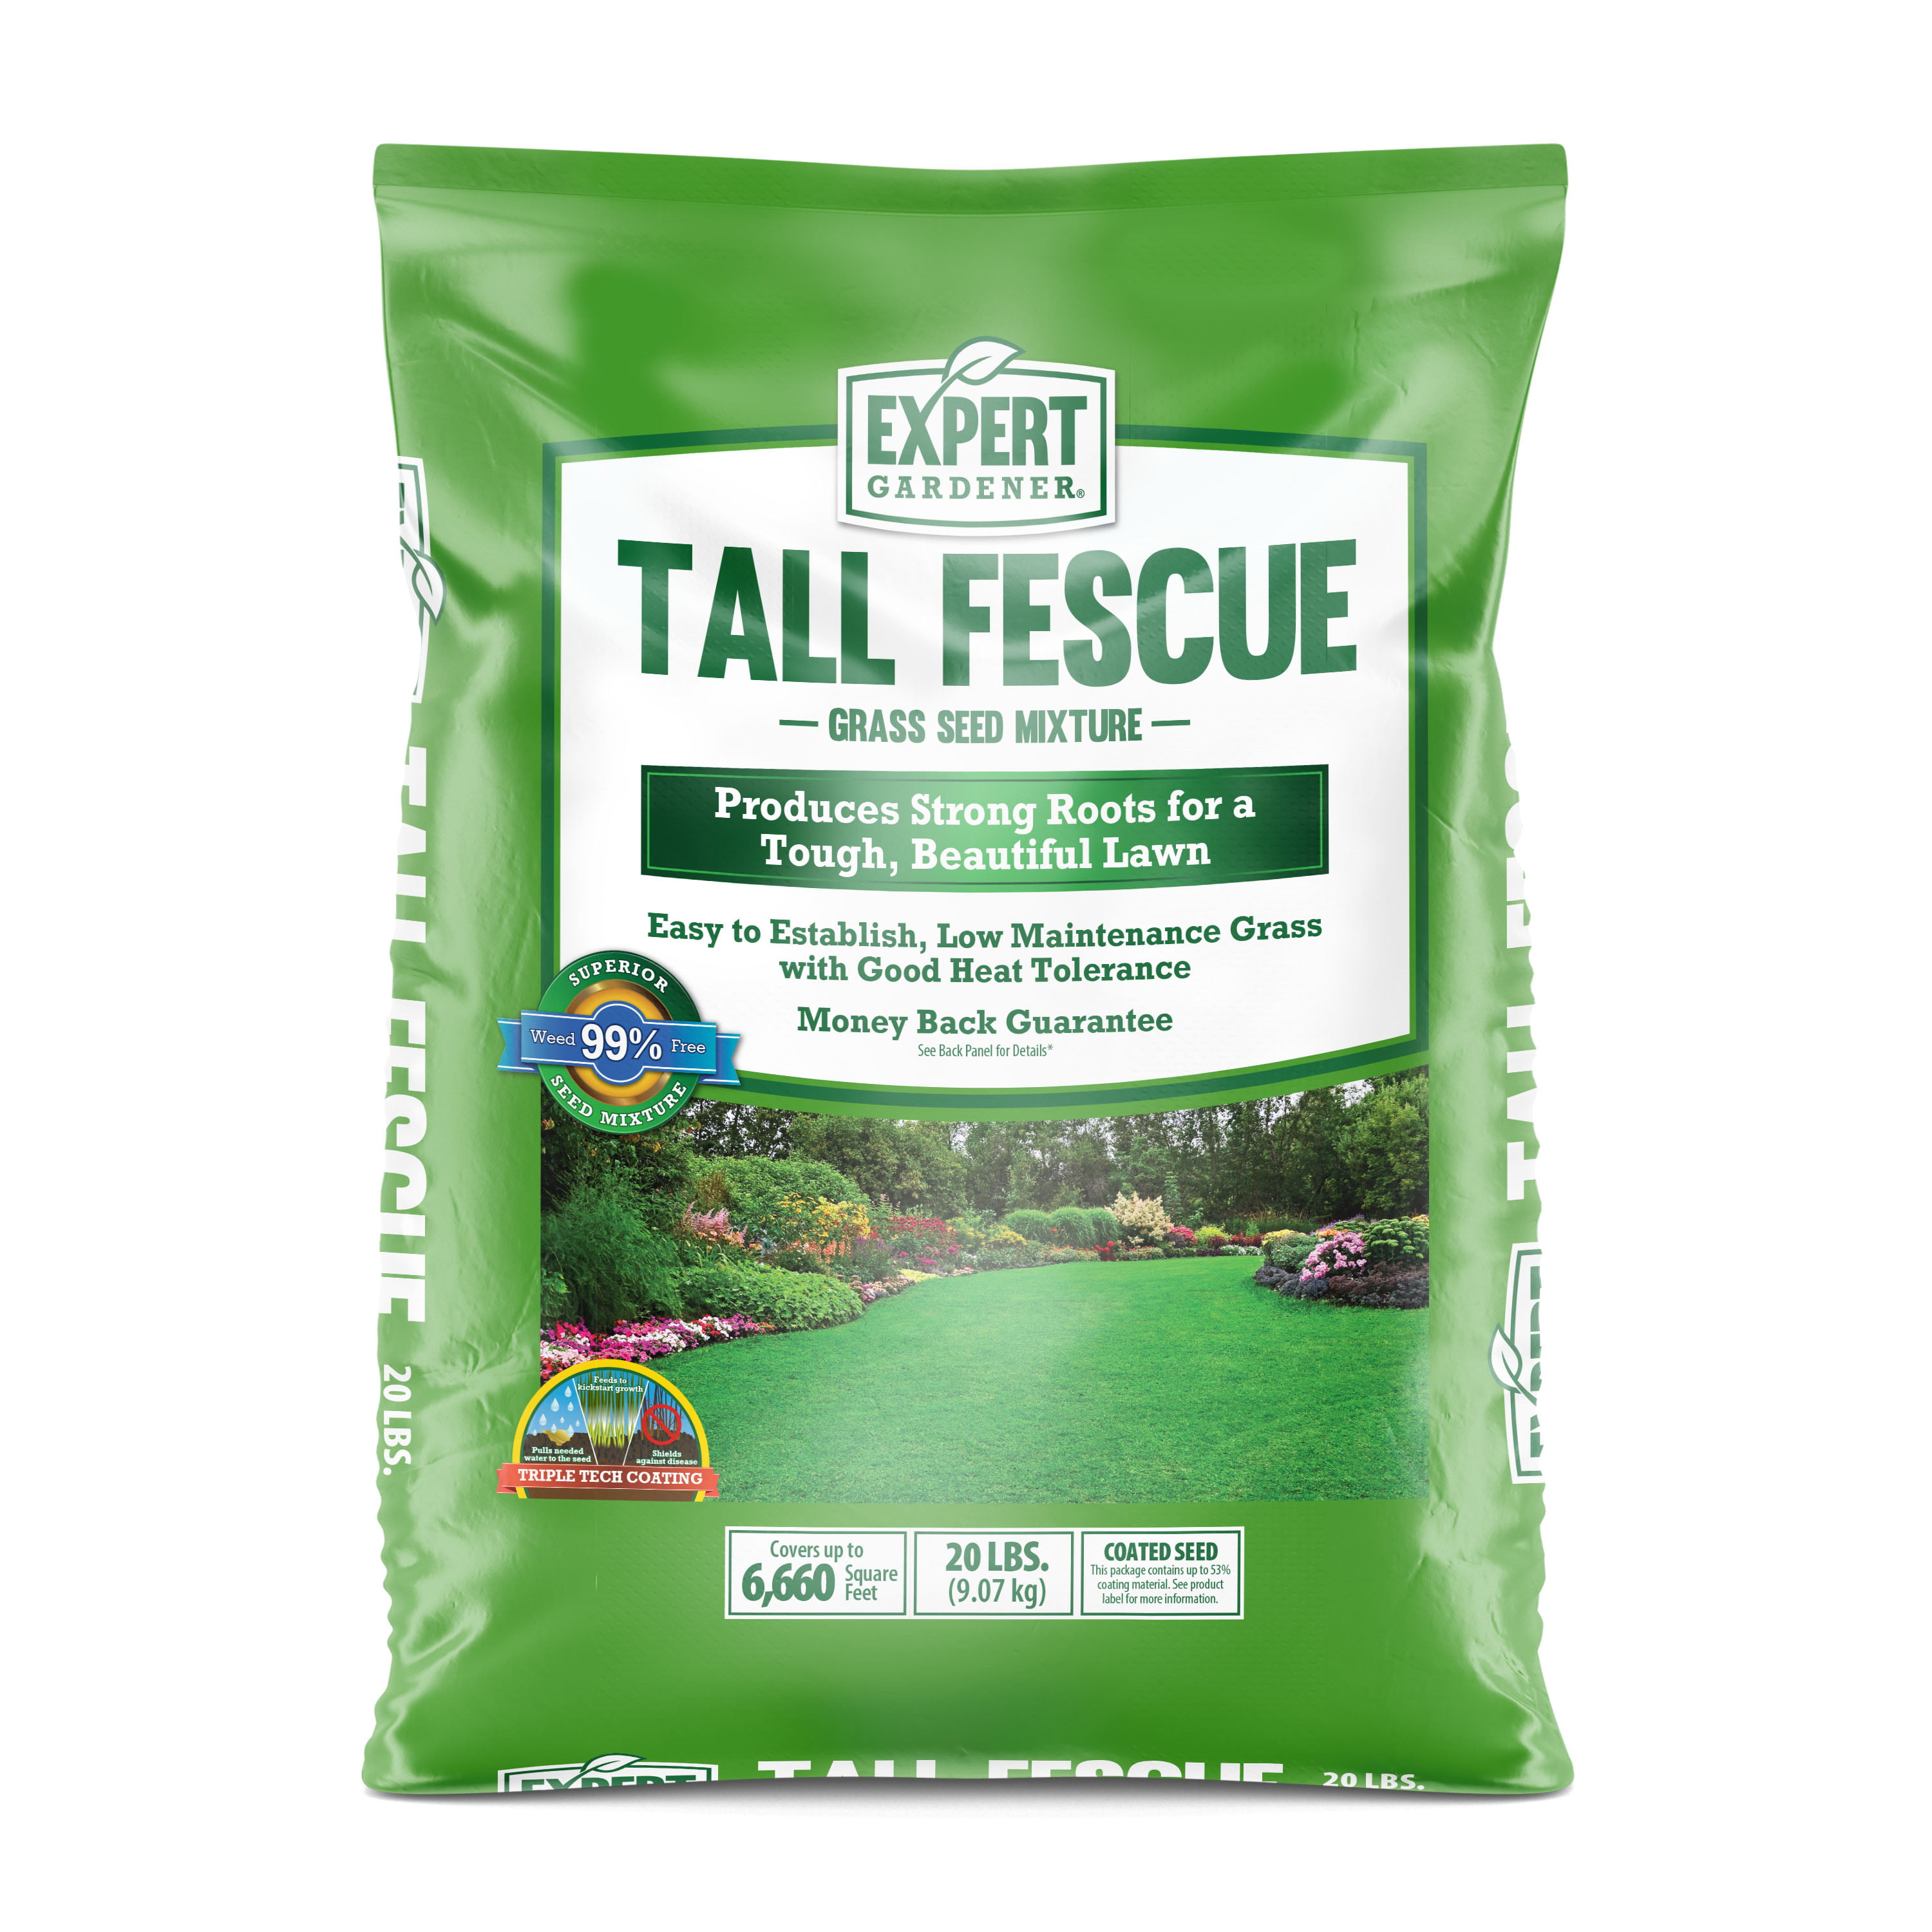 Expert Gardener Tall Fescue Grass Seed Mixture; 20 Pounds - Walmart.com